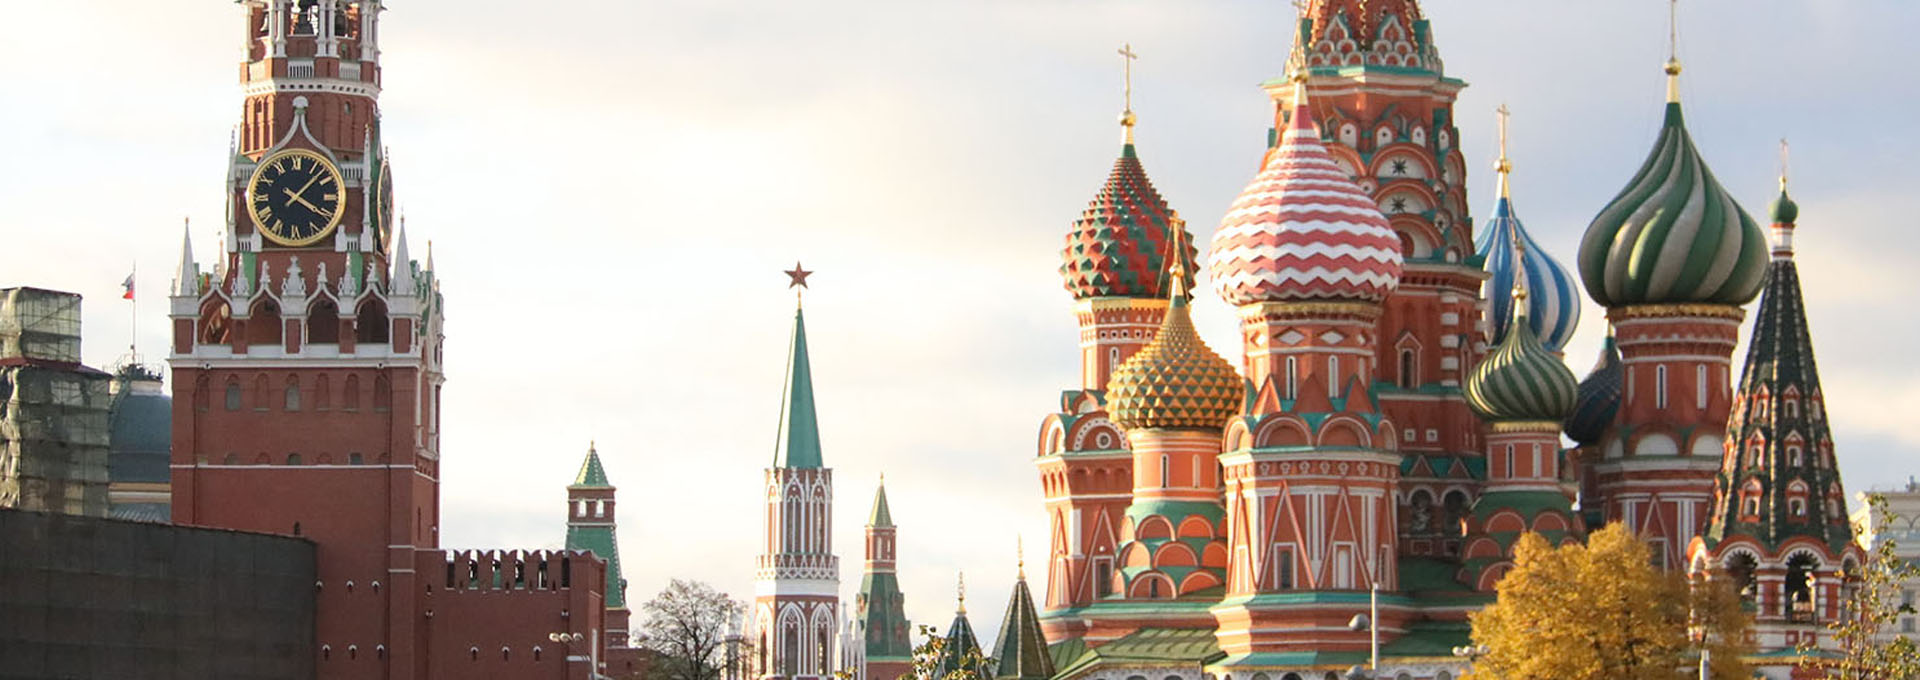 모스크바 붉은광장 바실리 성당, 스파스카야 시계탑